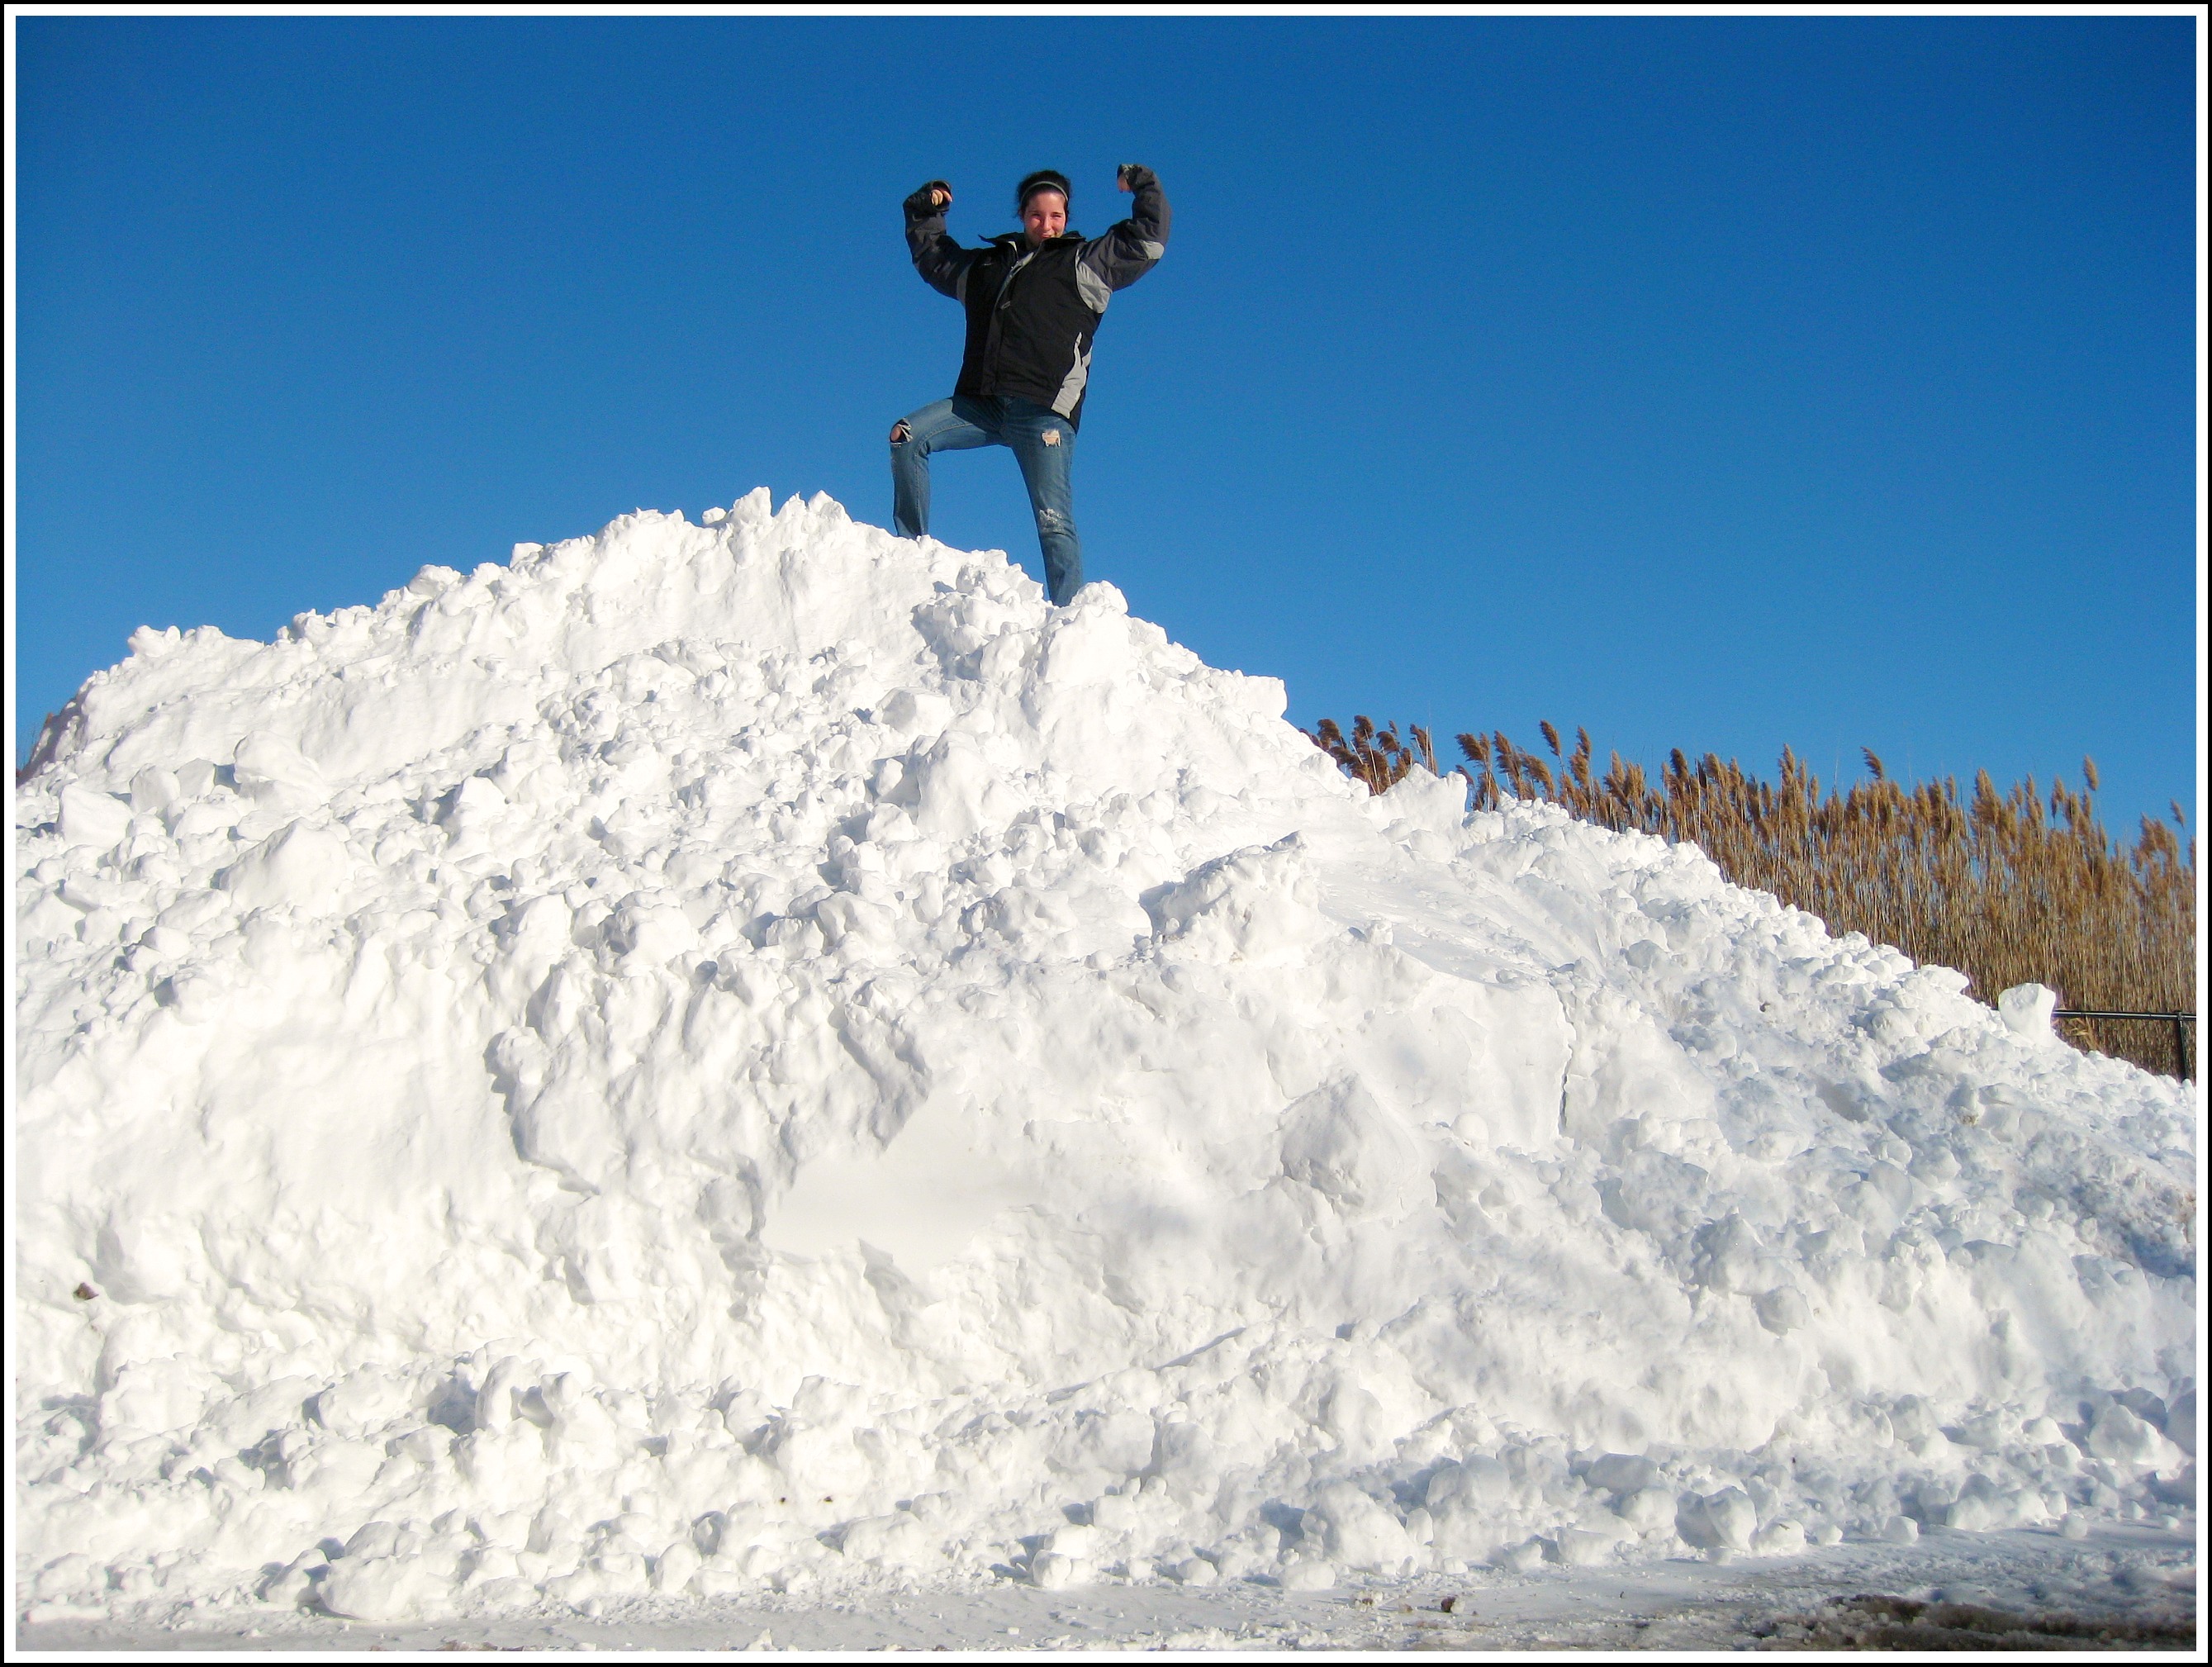 snow pile clipart - photo #50